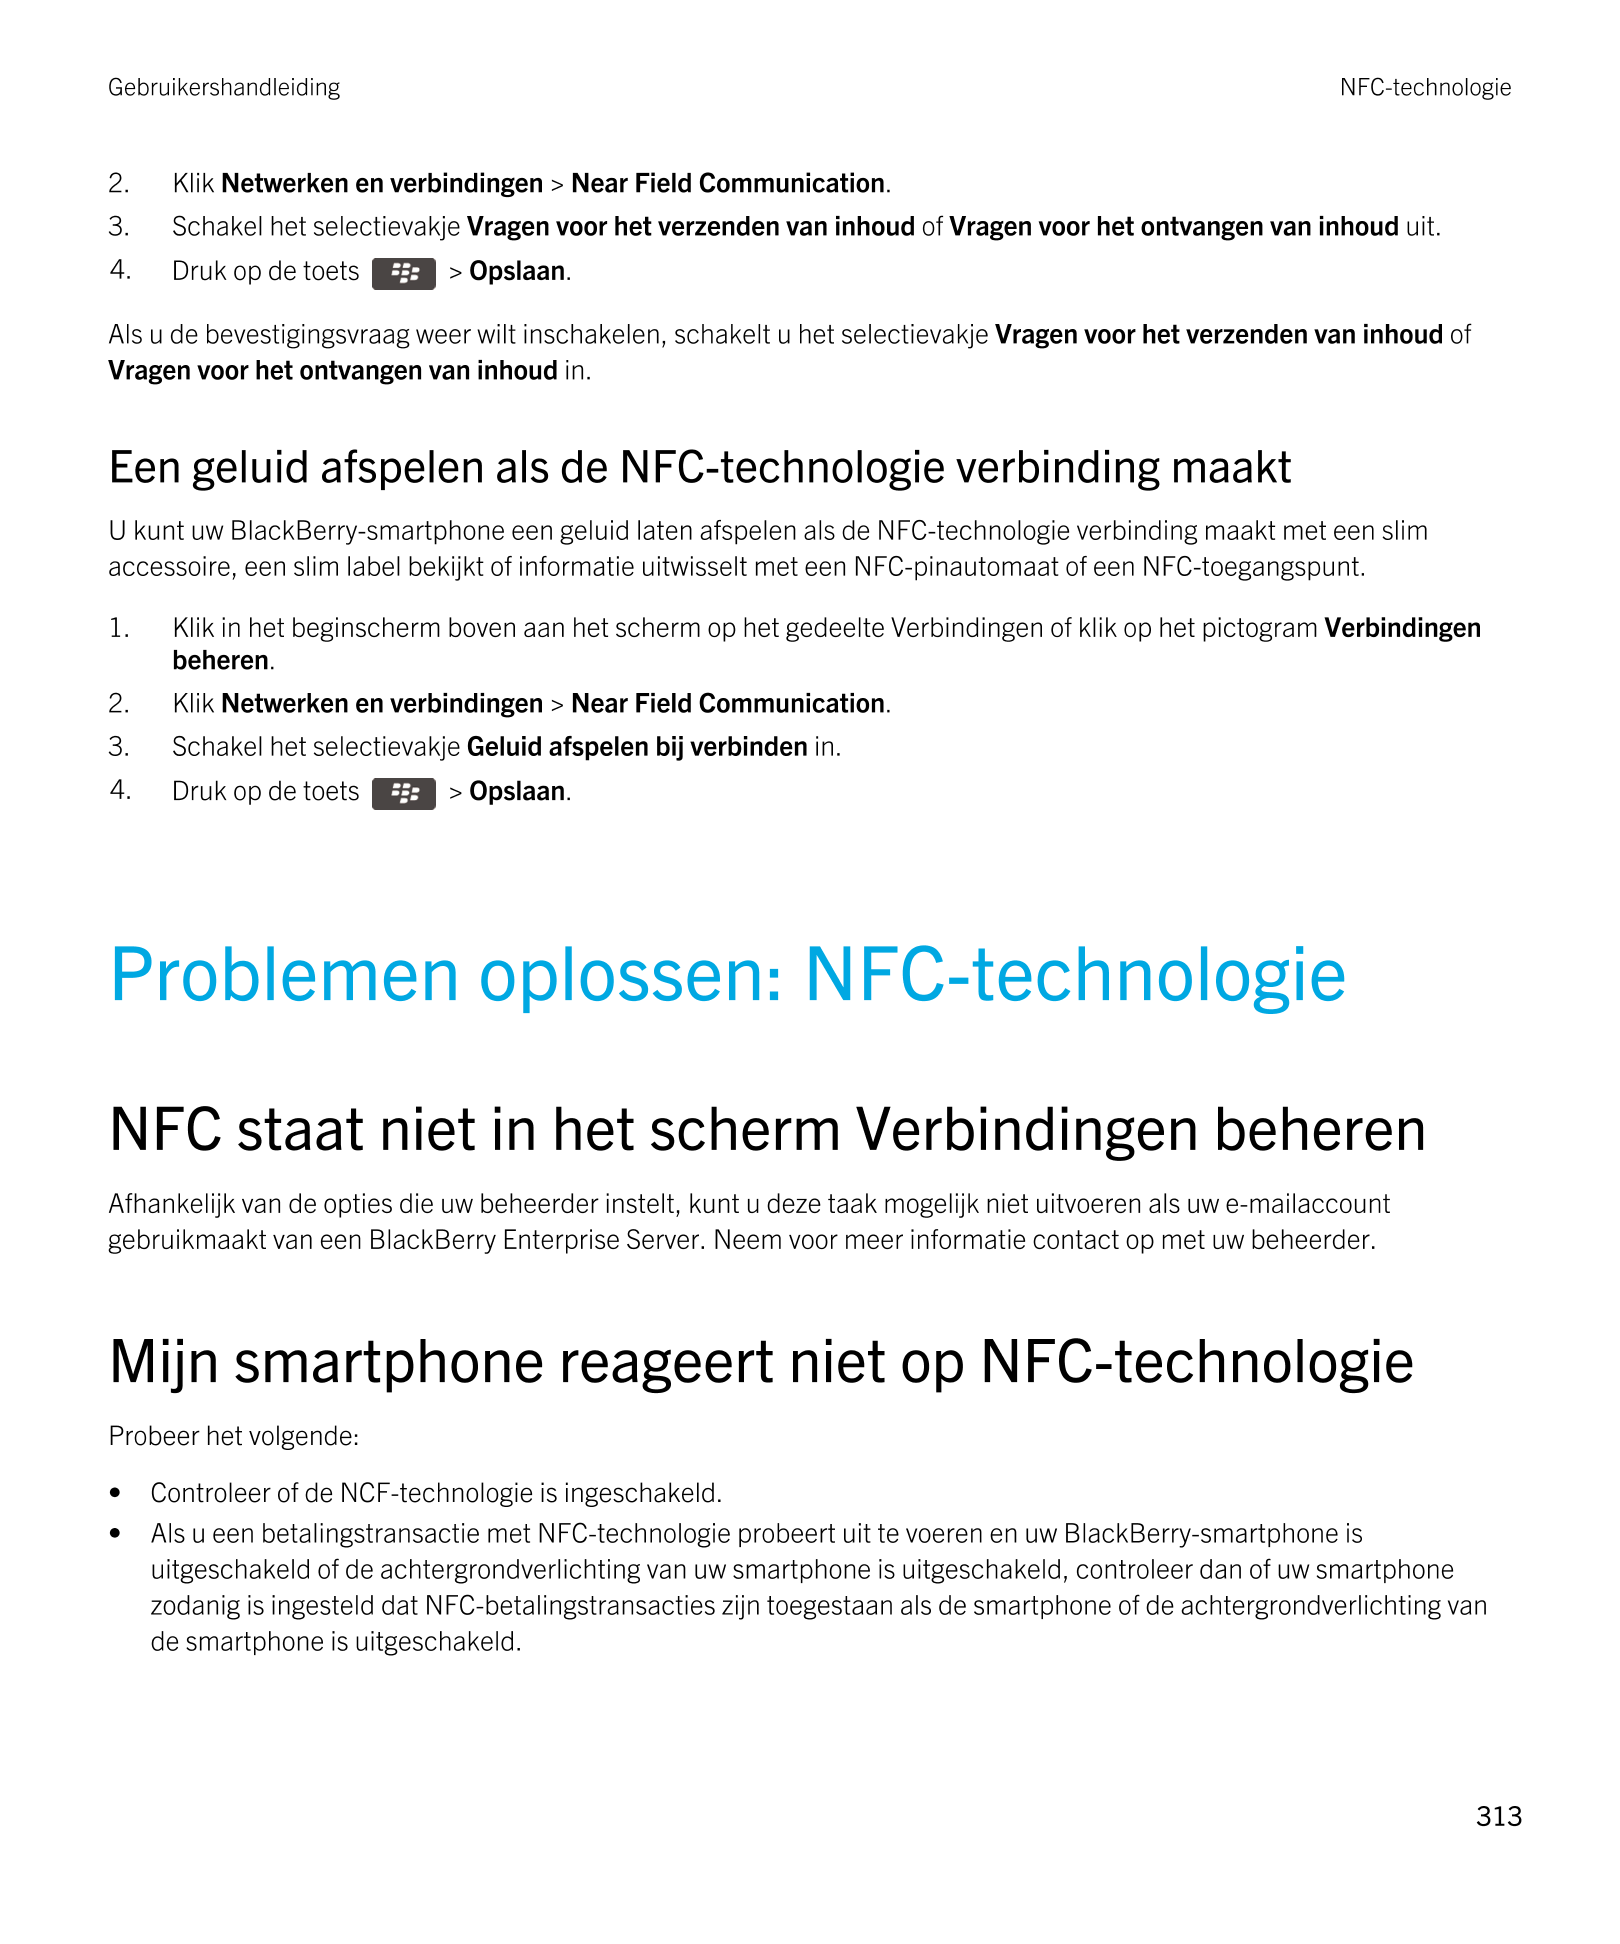 Gebruikershandleiding NFC-technologie
2. Klik  Netwerken en verbindingen >  Near Field Communication.
3. Schakel het selectievak